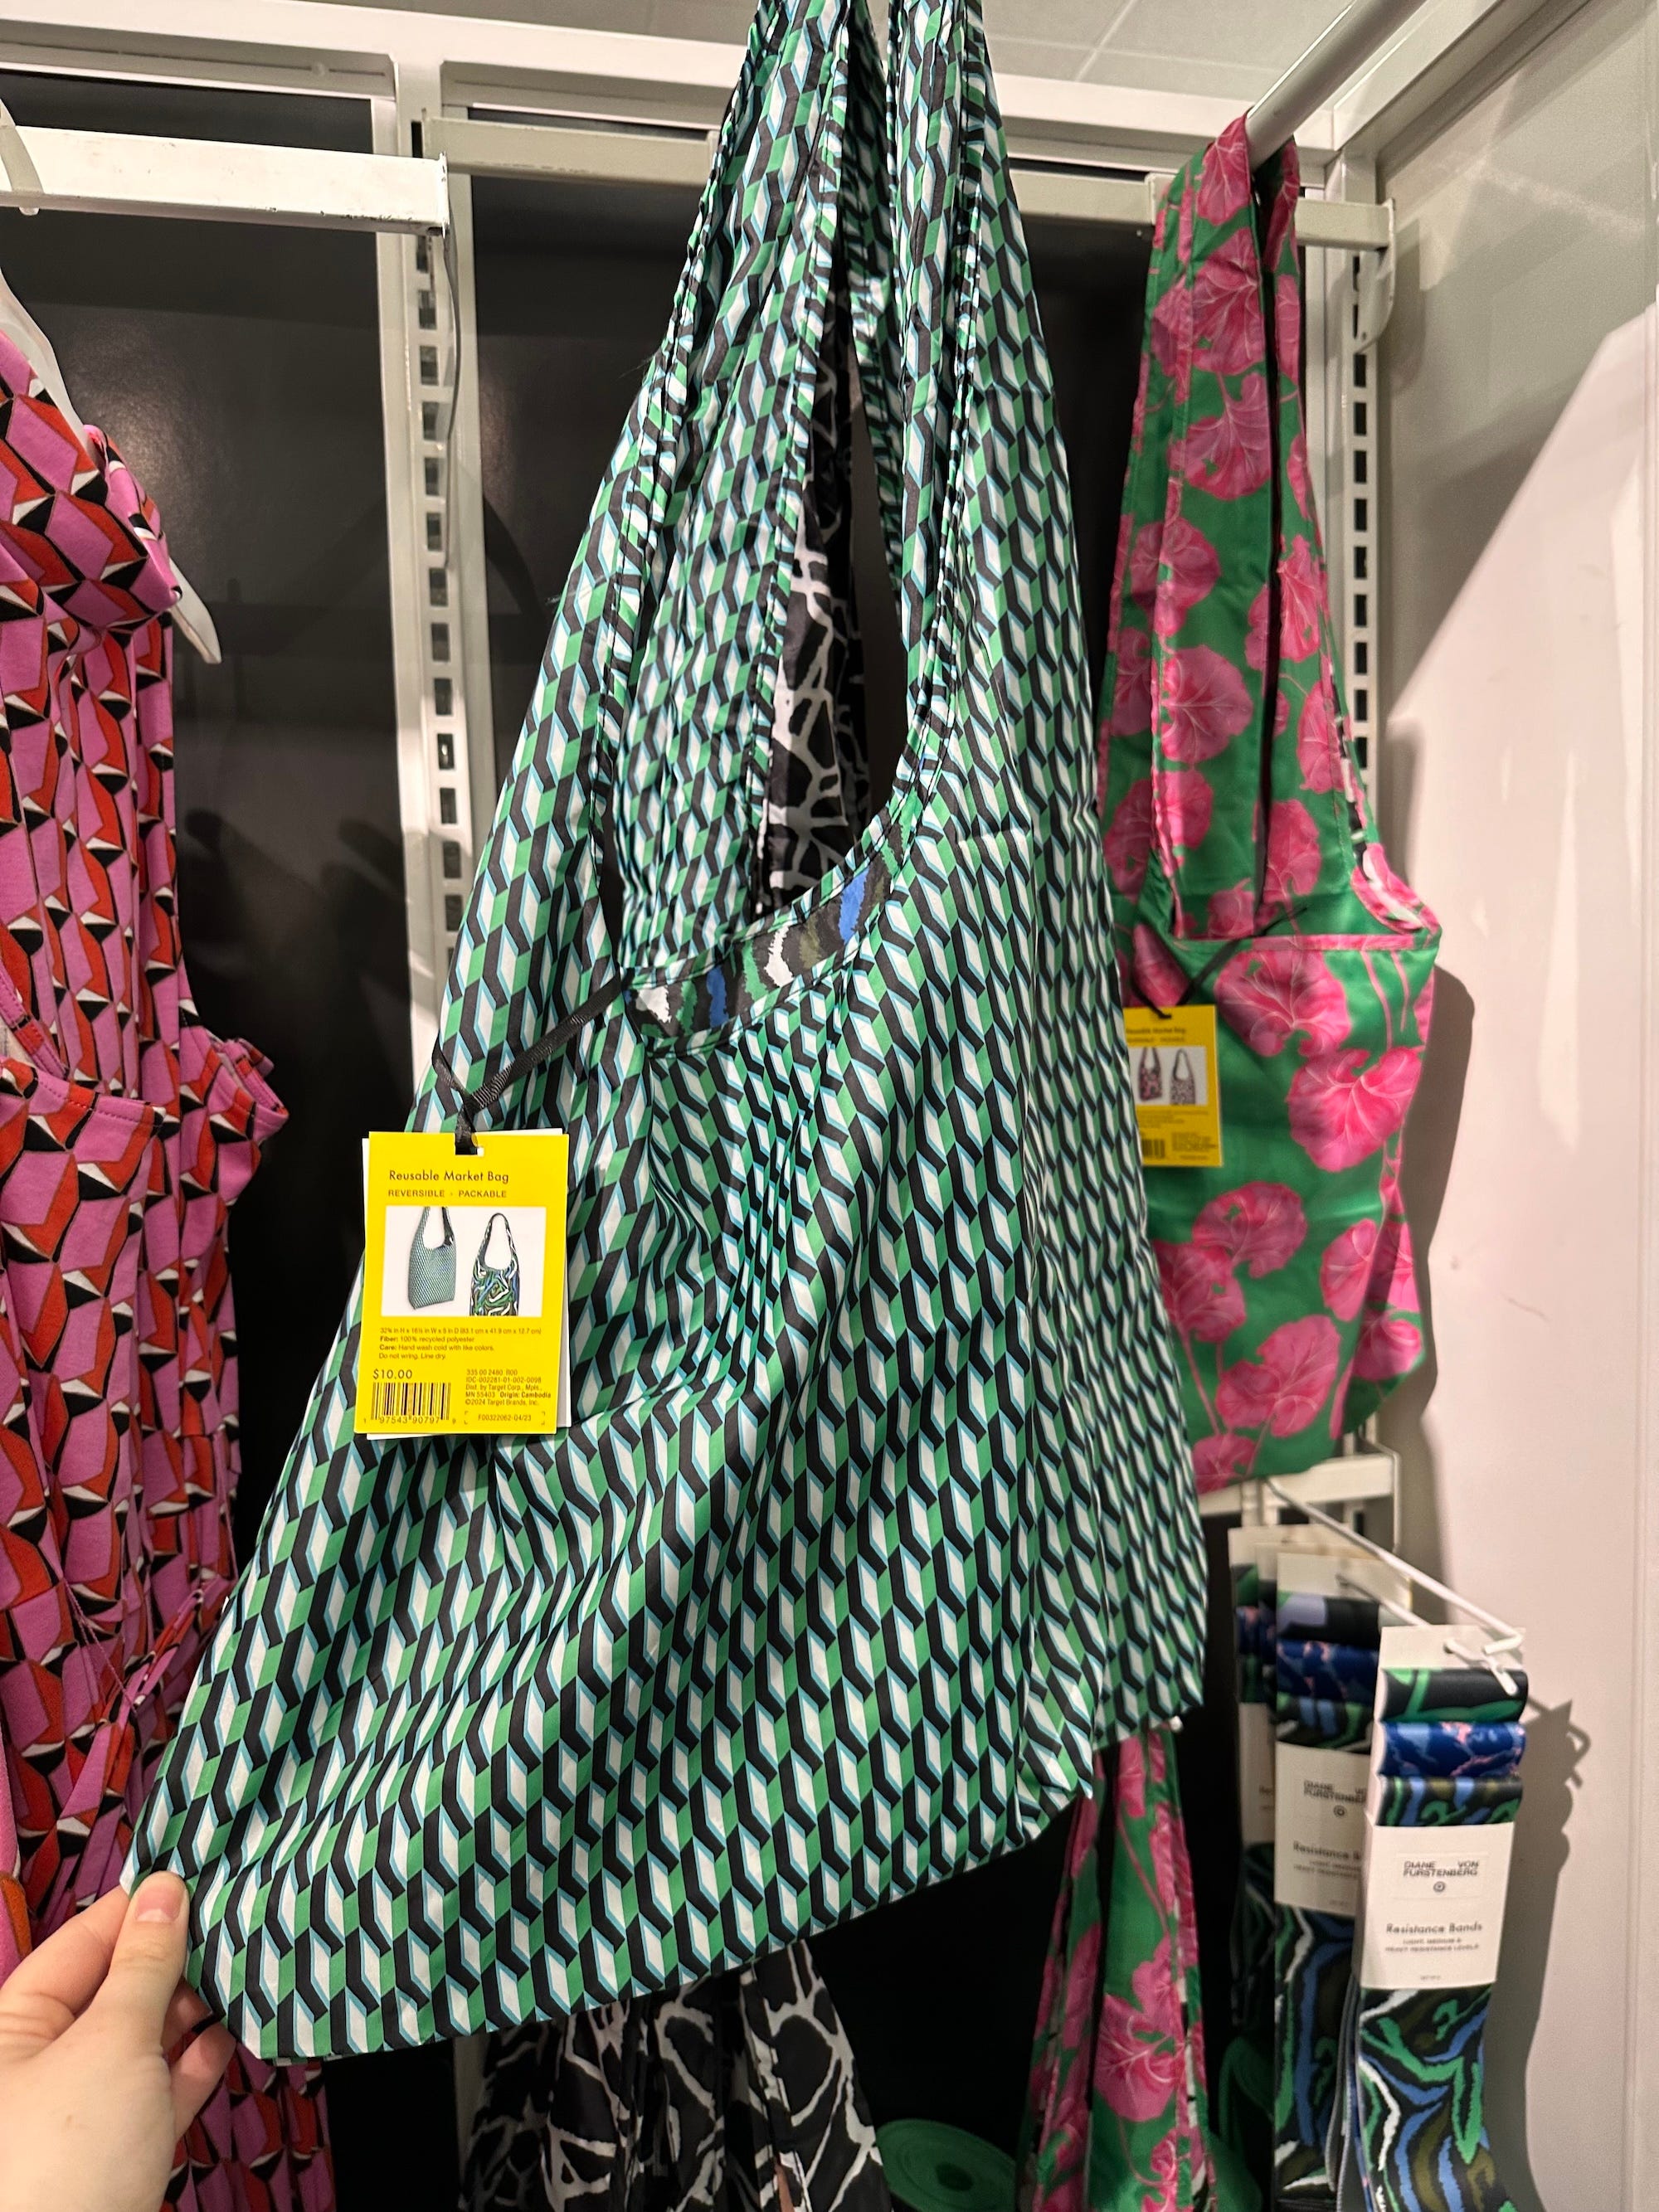 Eine grüne Einkaufstasche steht auf einem Regal in einem Geschäft.